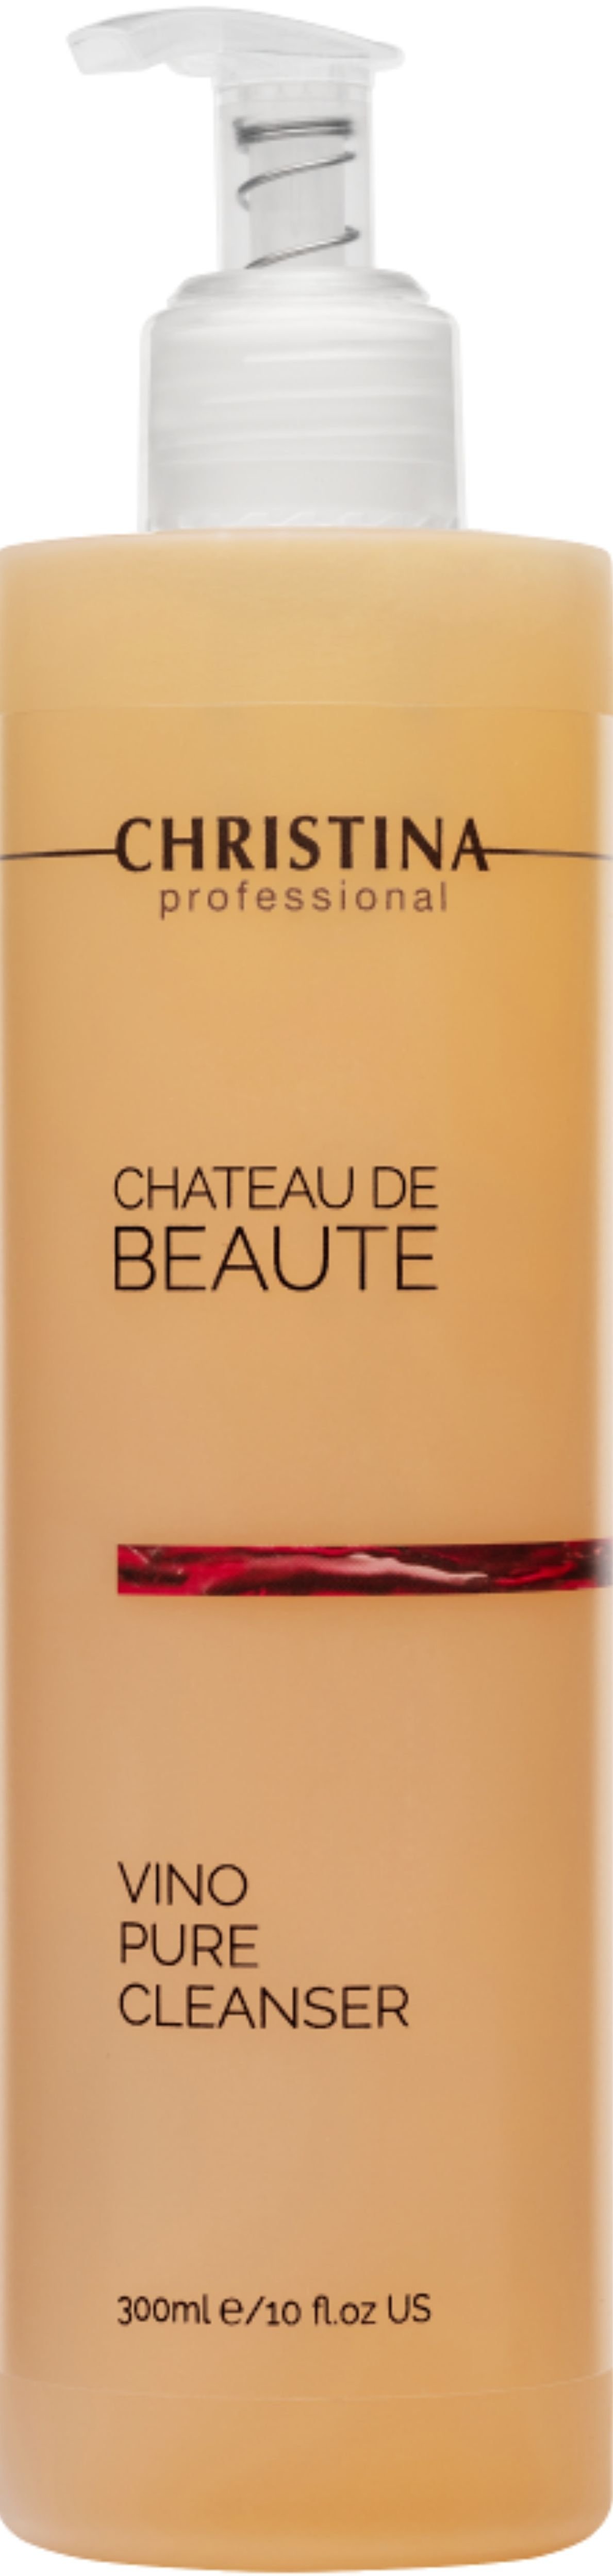 Подарунковий набір Christina Chateau De Beaute: Флюїд 30 мл + Очищувальний гель 300 мл + Маска для миттєвого ліфтингу 75 мл + Захисний крем SPF 30 50 мл - фото 3